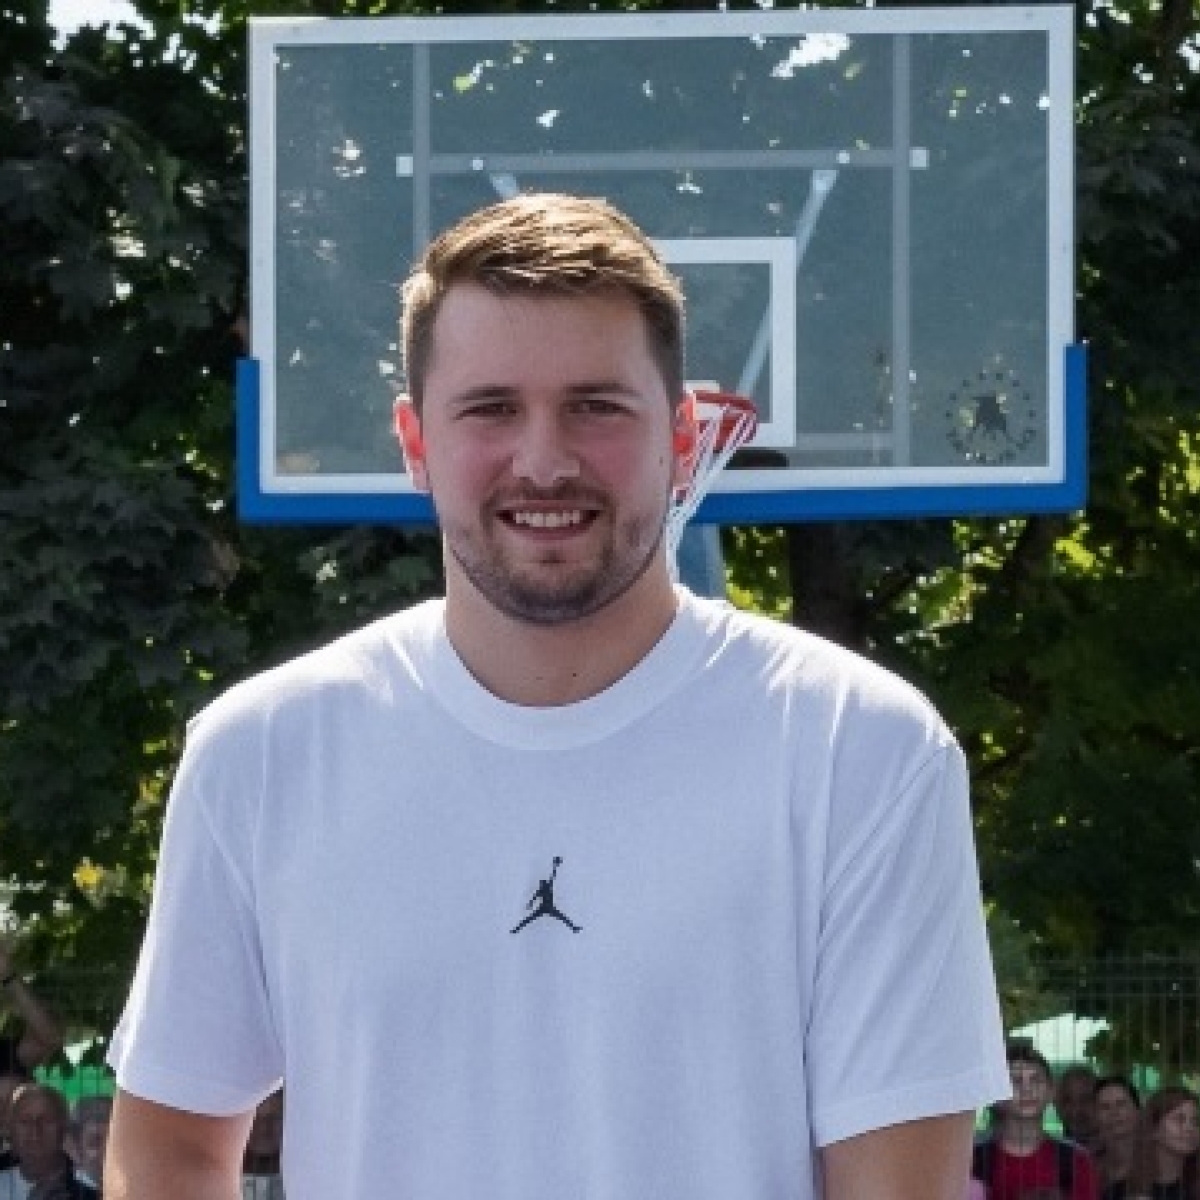 Ντόντσιτς: Έφτιαξε γήπεδα μπάσκετ στην παλιά γειτονιά του στη Σλοβενία  (pics) | Gazzetta